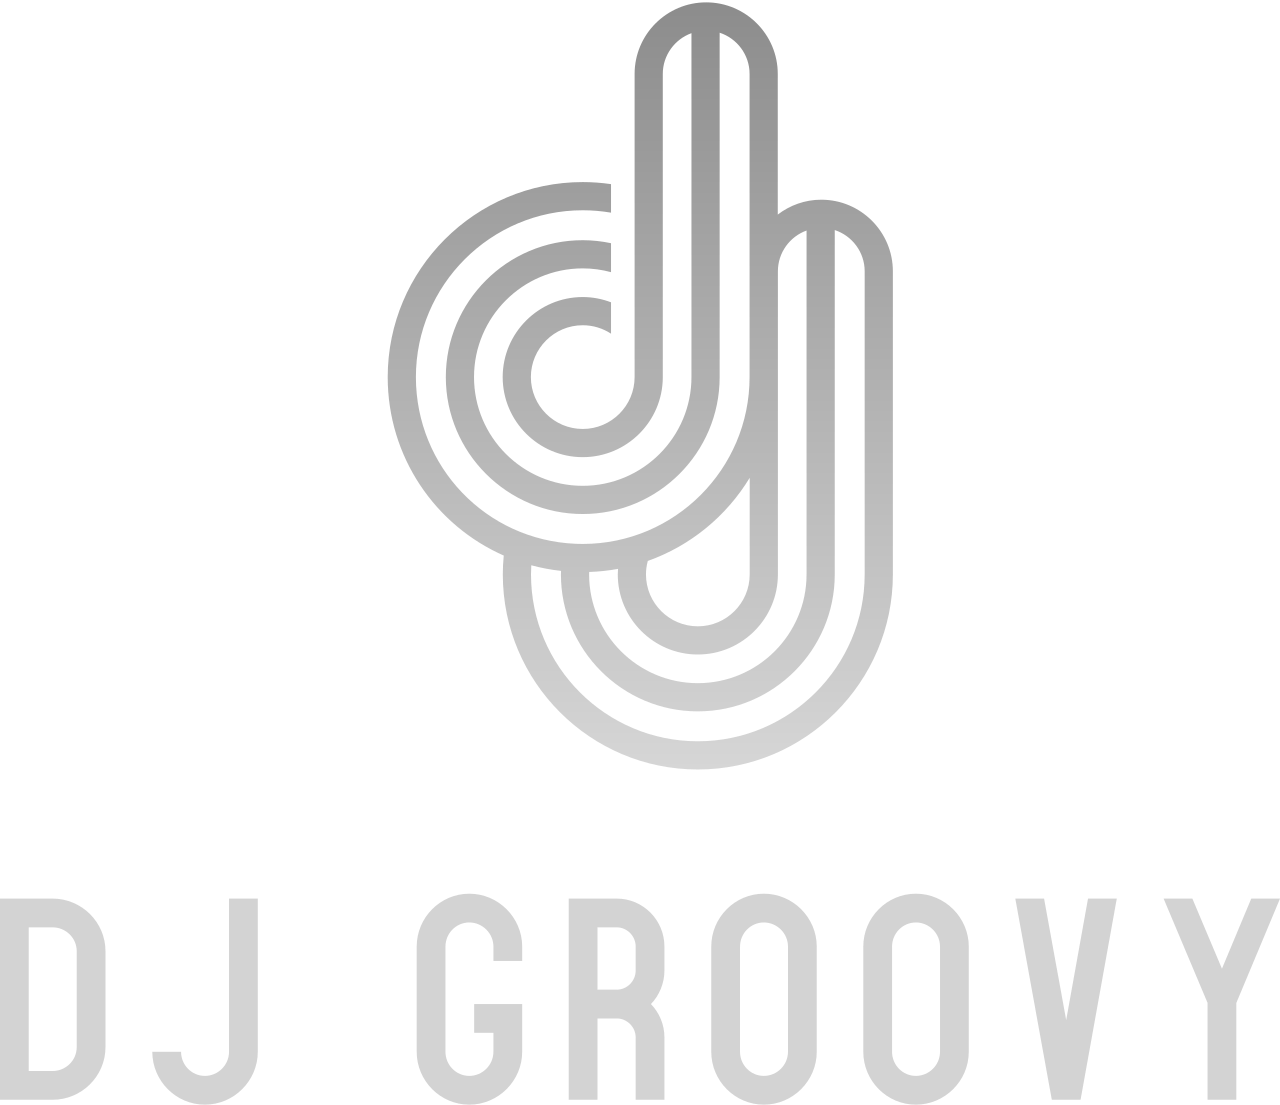 dj groovy's logo